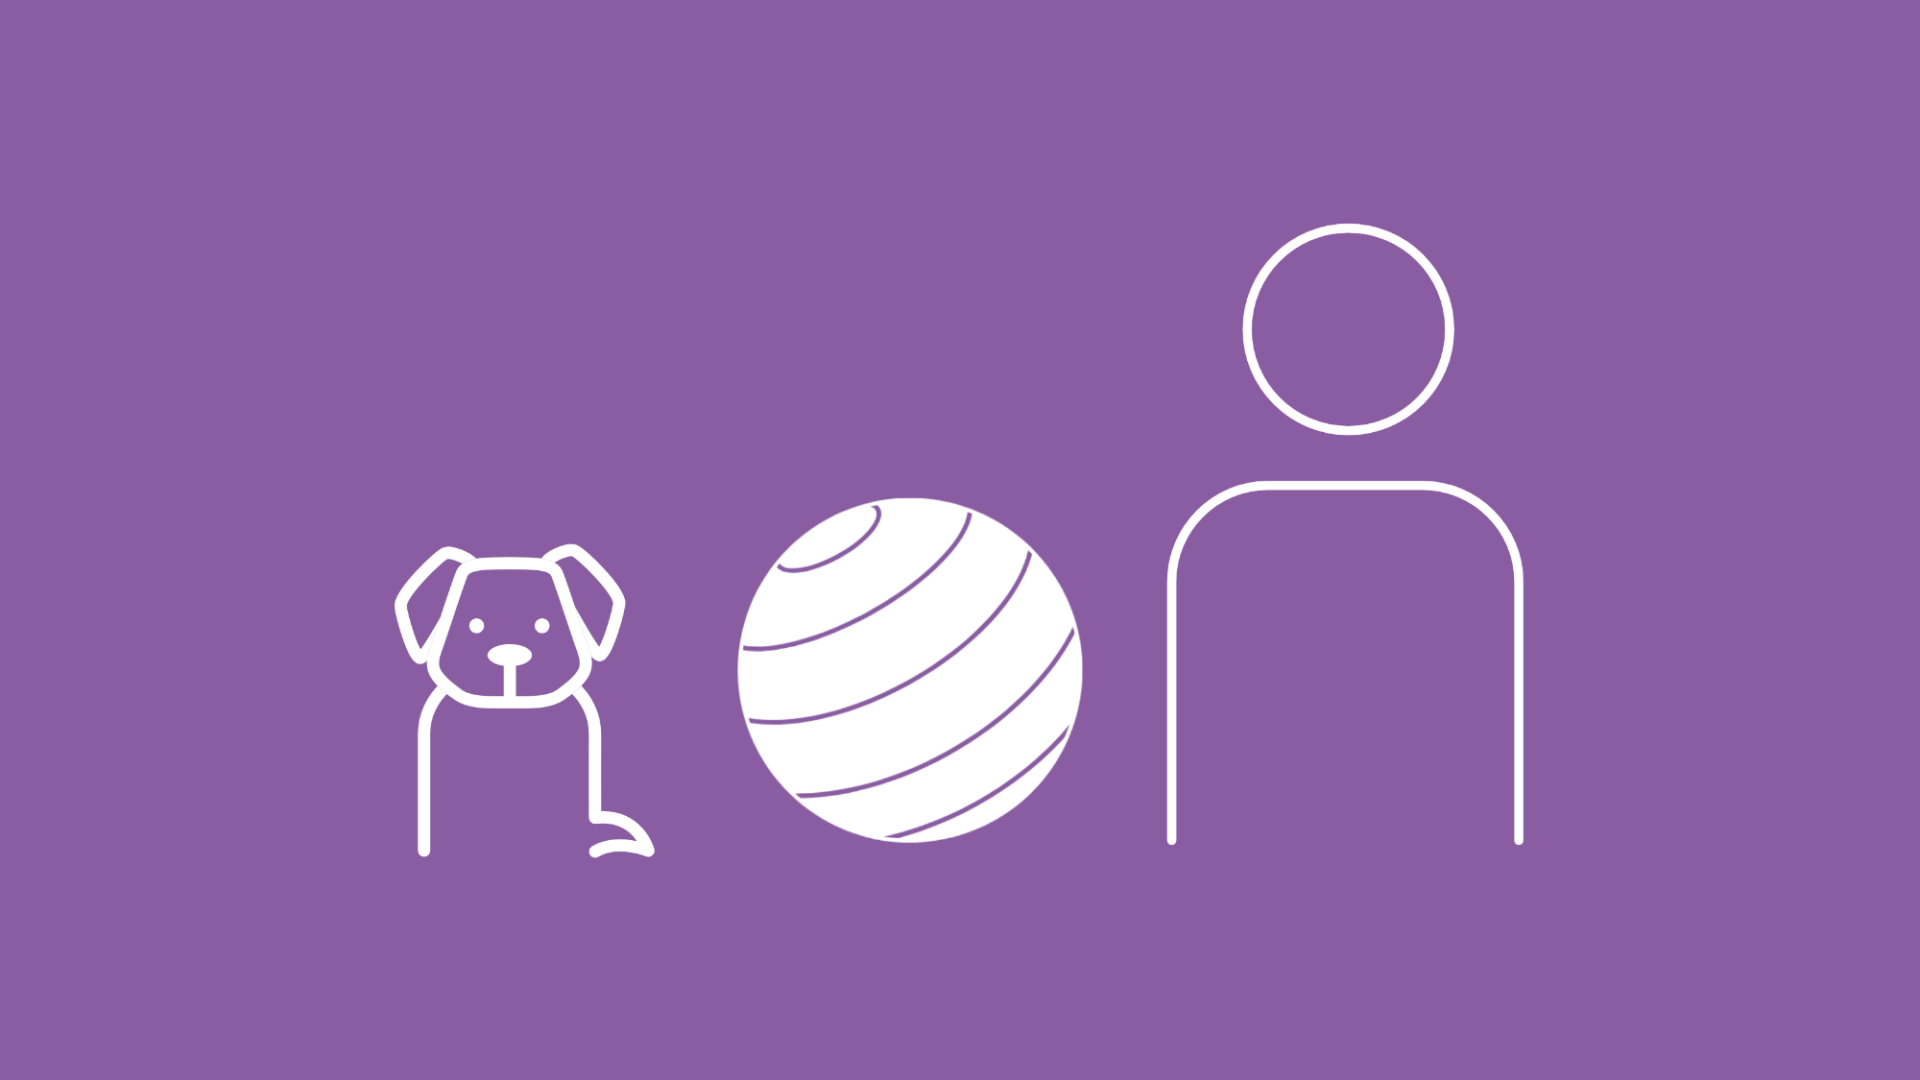 Auf dem Bild ist ein Hund mit einem Gymnastikball und einem Therapeuten abgebildet, der zur Physiotherapie geht.